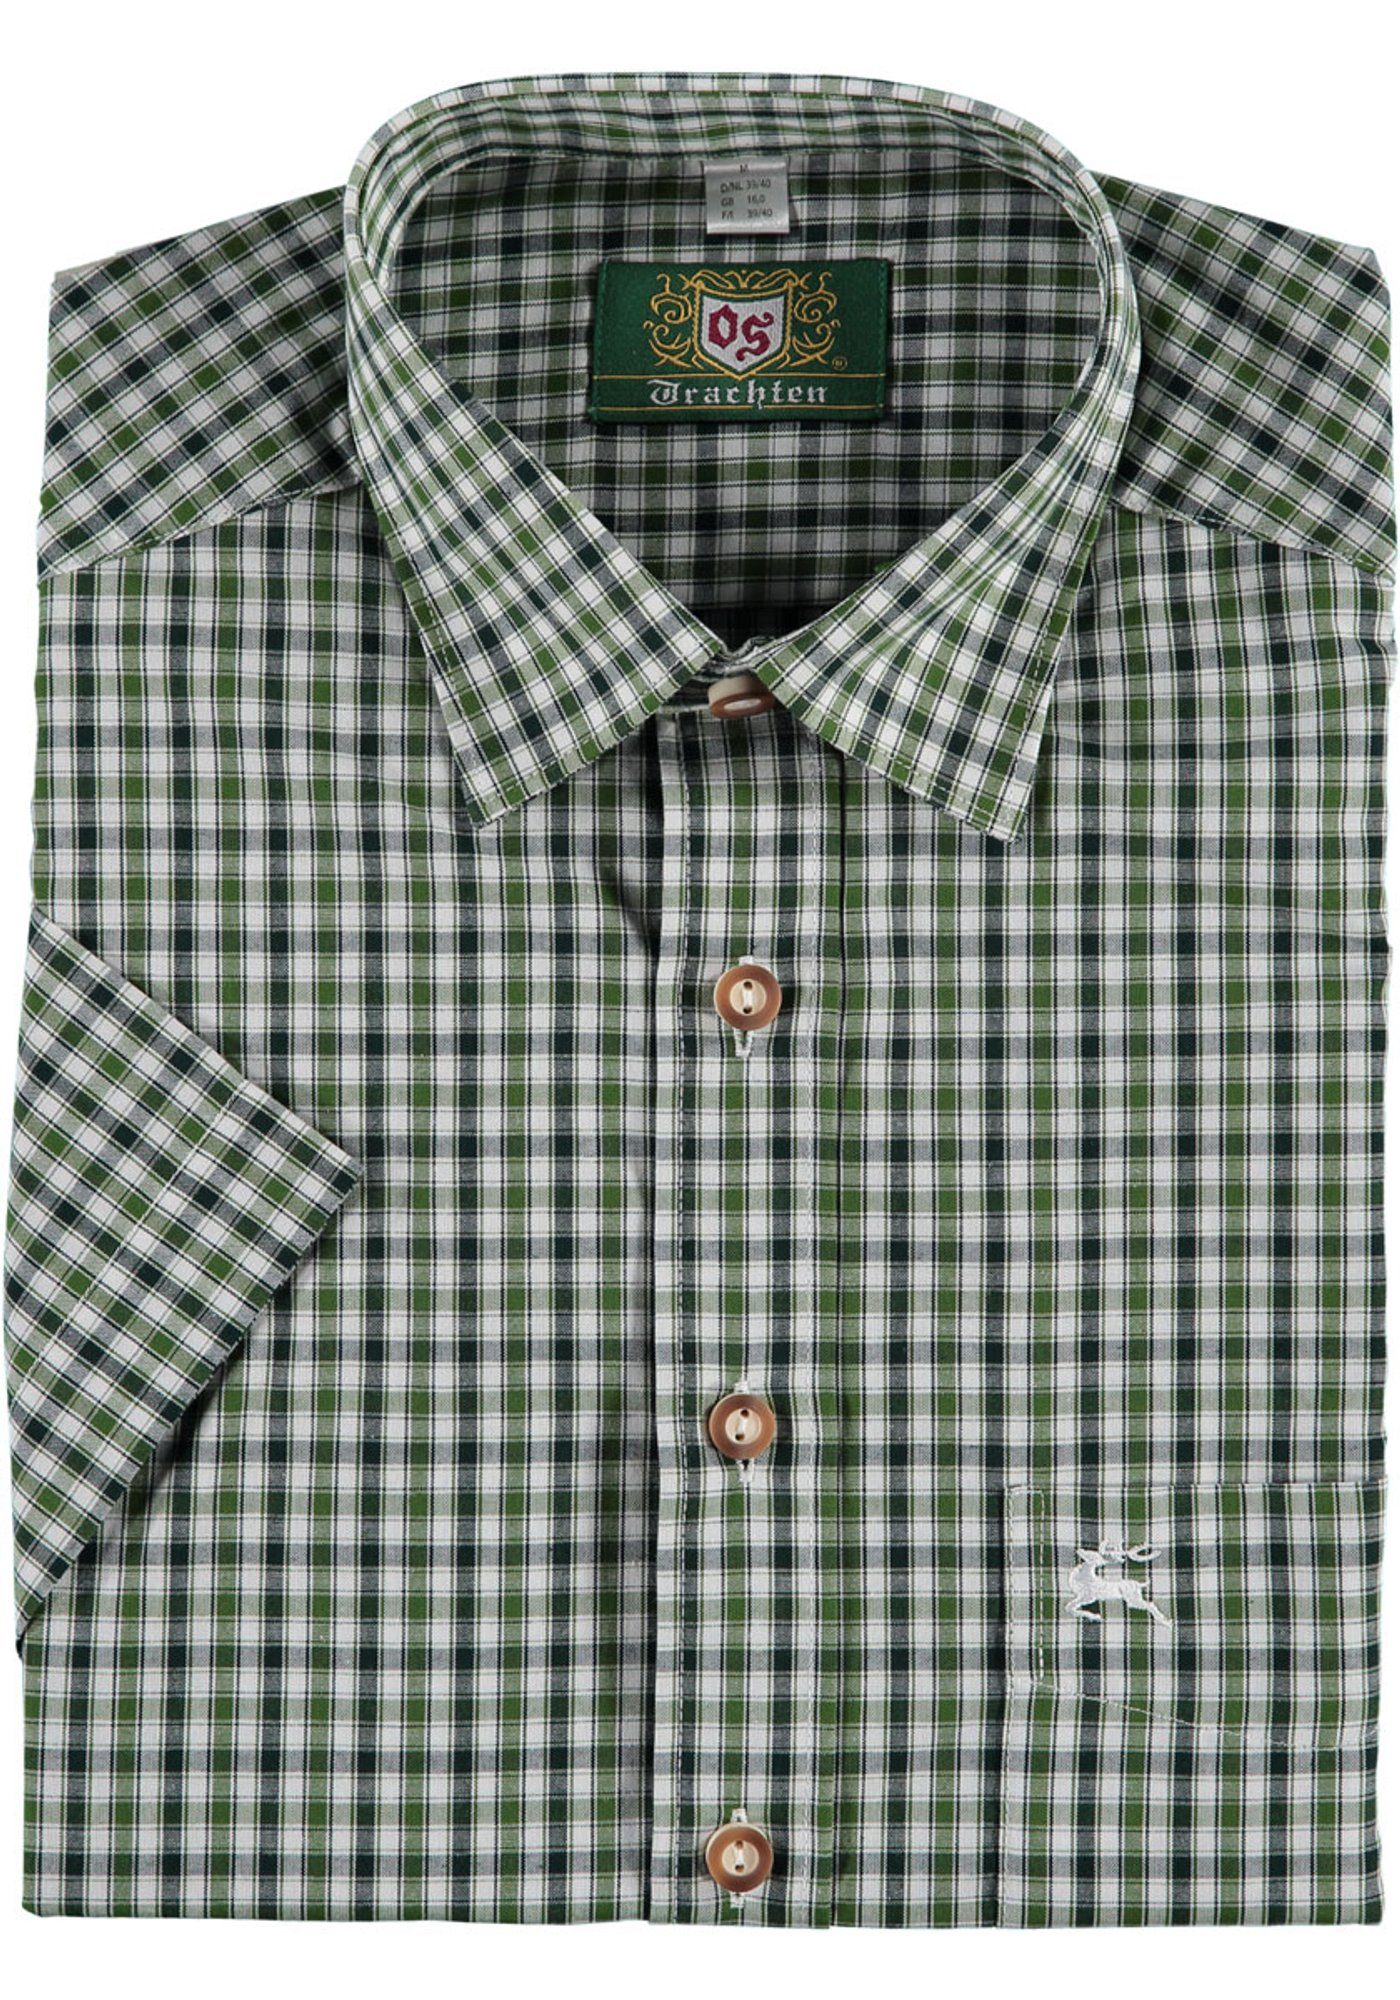 OS-Trachten Trachtenhemd Ipuve Kurzarmhemd mit Hirsch-Stickerei auf der Brusttasche dunkelgrün